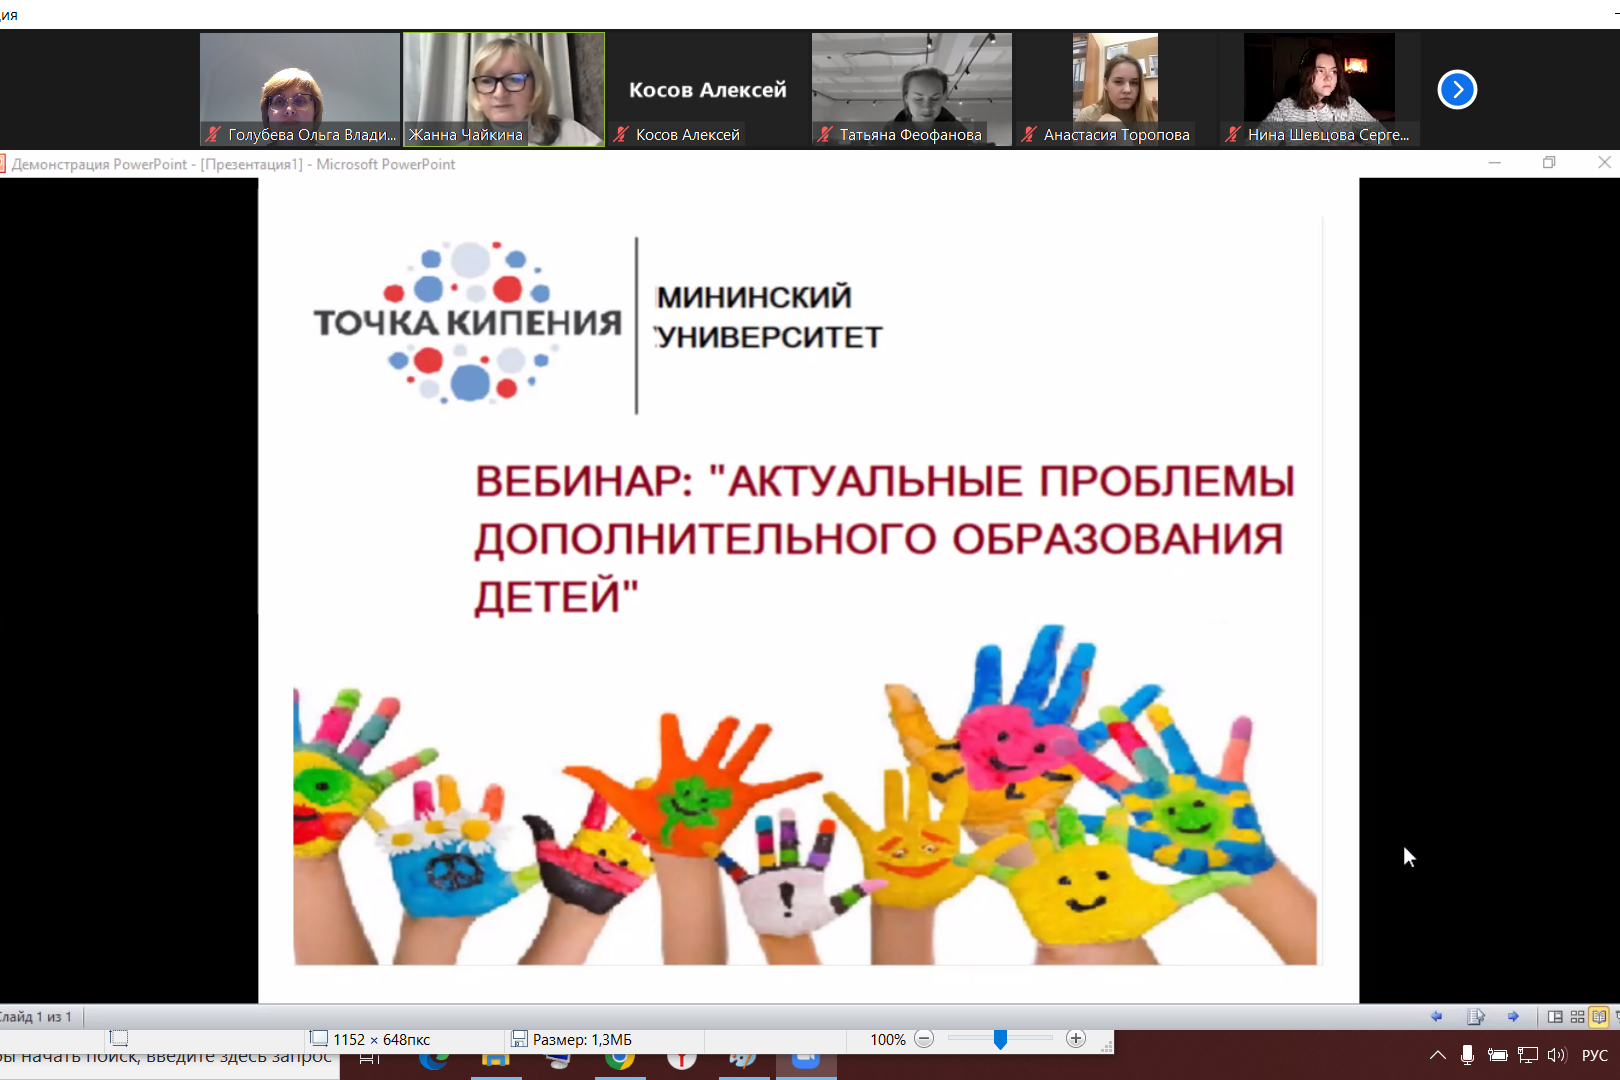 Вопросы дополнительного образования детей обсудили на вебинаре в Мининском университете